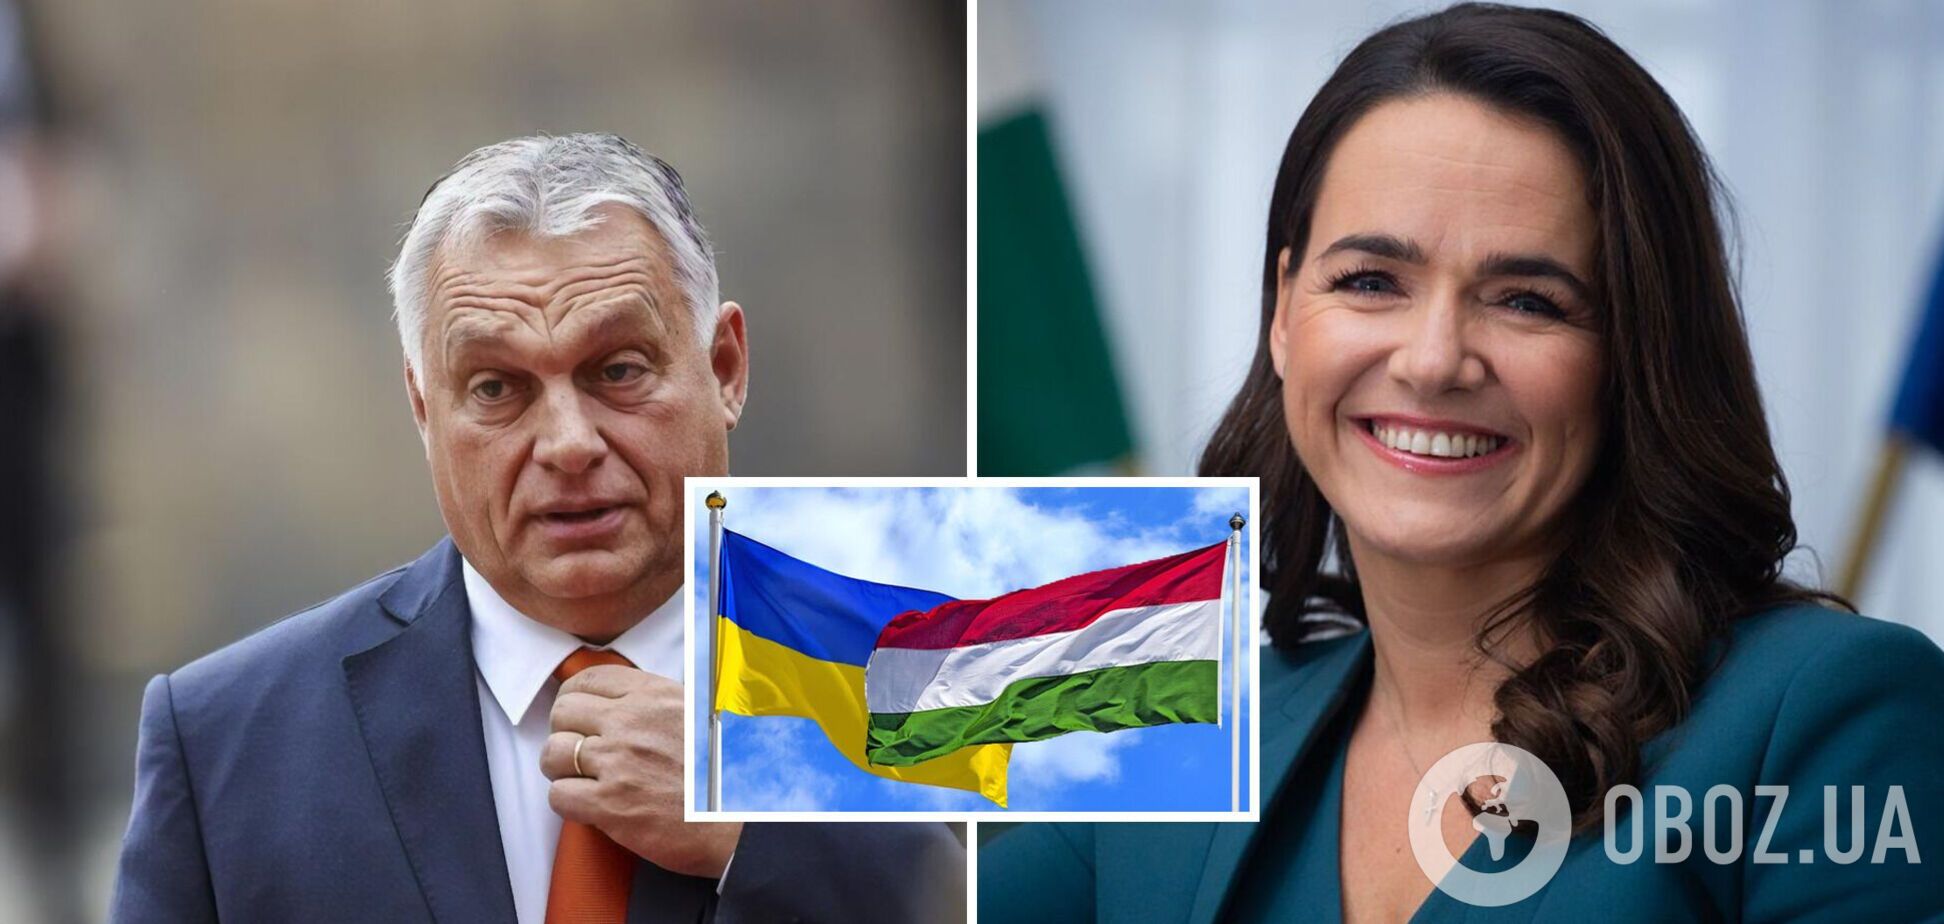 Президент Венгрии давит на Орбана для перезагрузки отношений с Украиной – Bloomberg